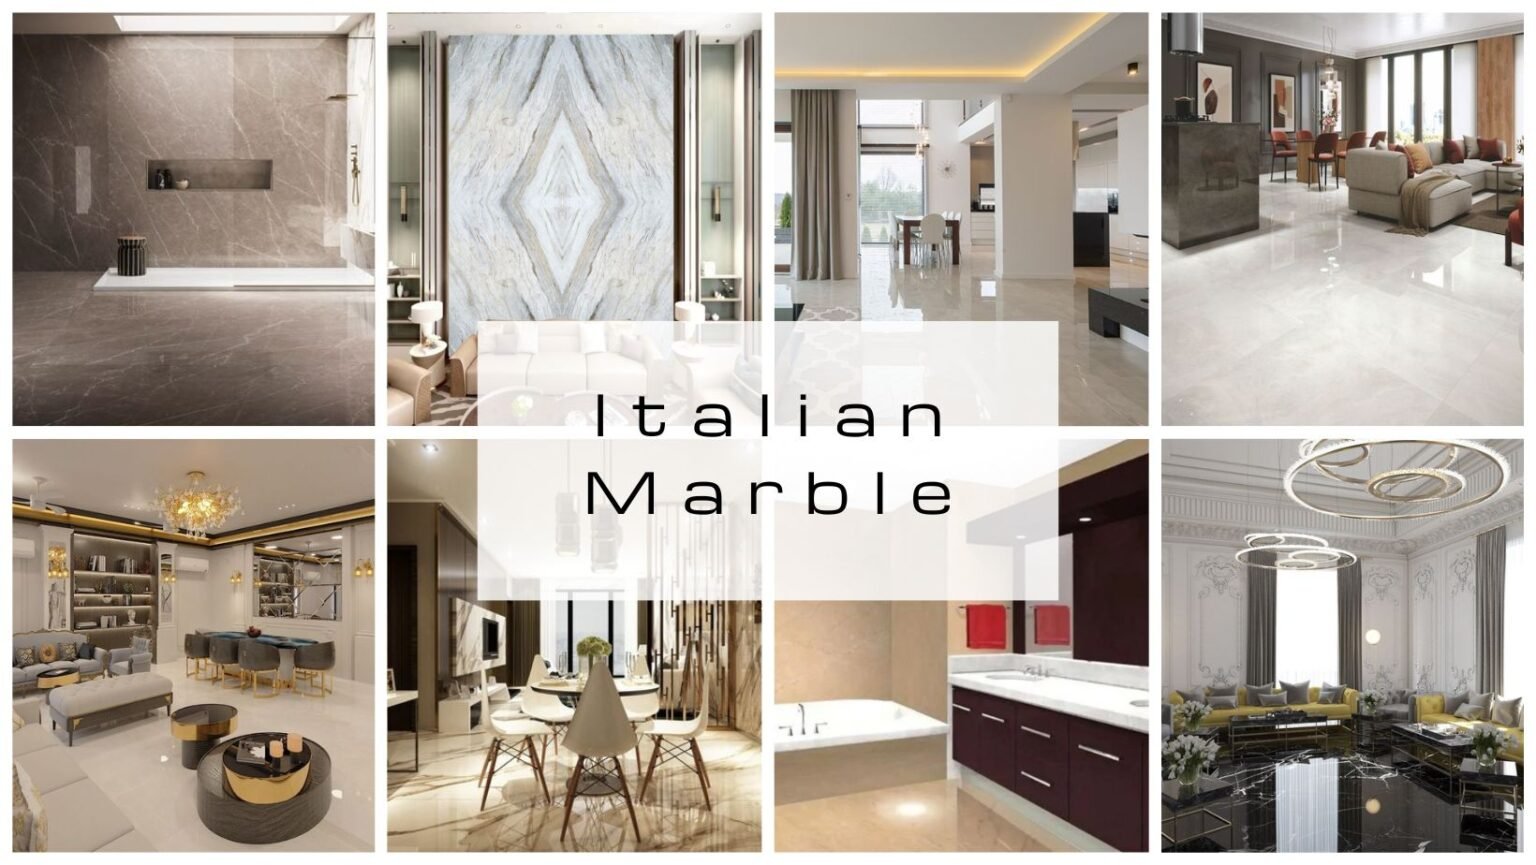 Italian Marble